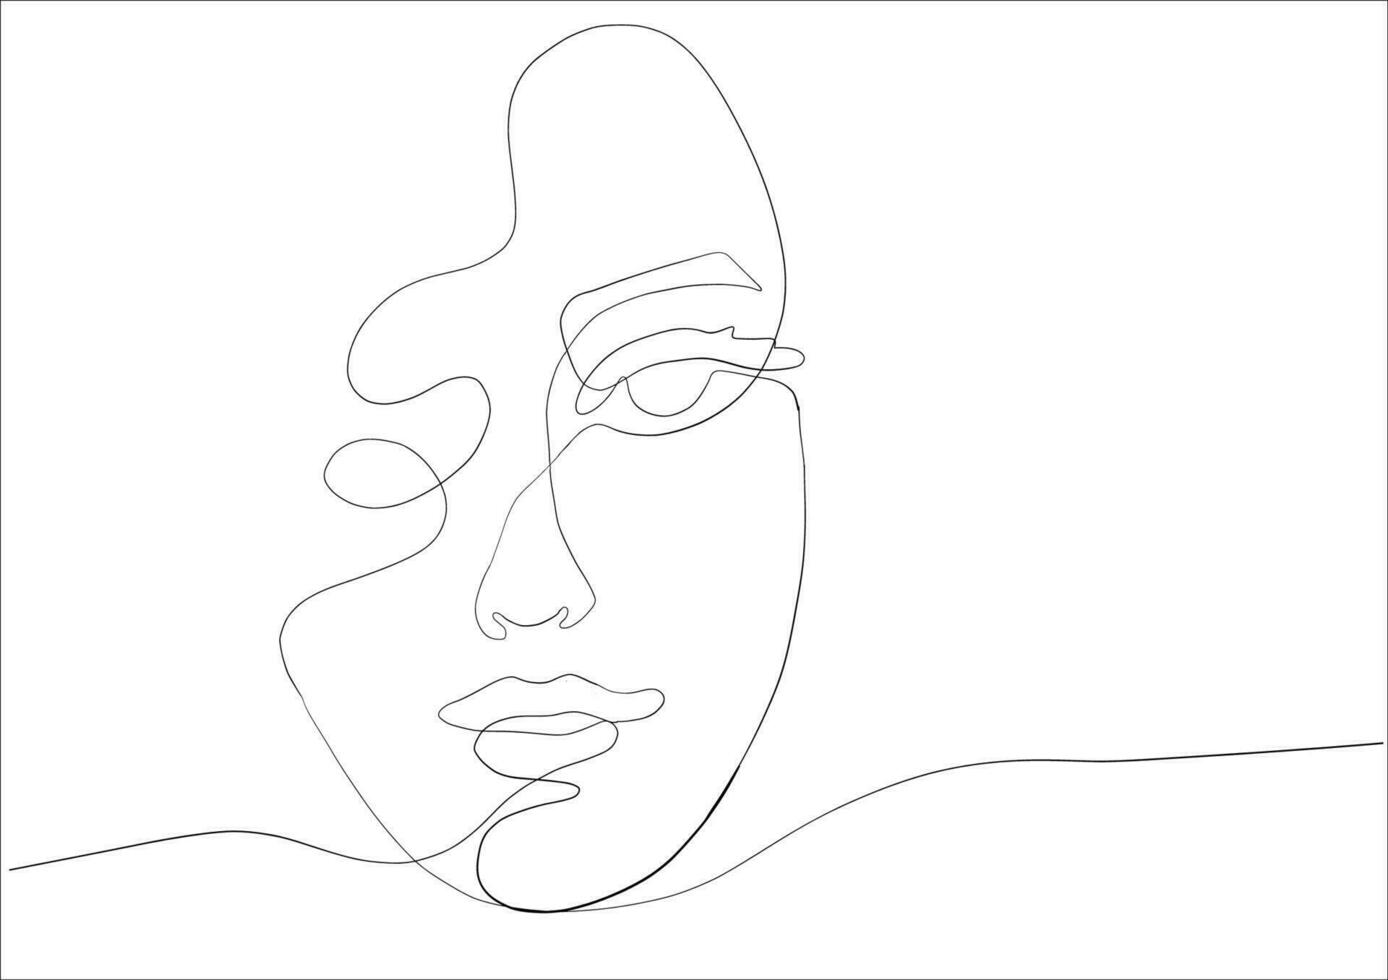 continuo línea dibujo de cara mujer.abstracta línea Arte retrato, línea continua dibujo lineal, vector minimalismo estilo y bosquejo retrato concepto.